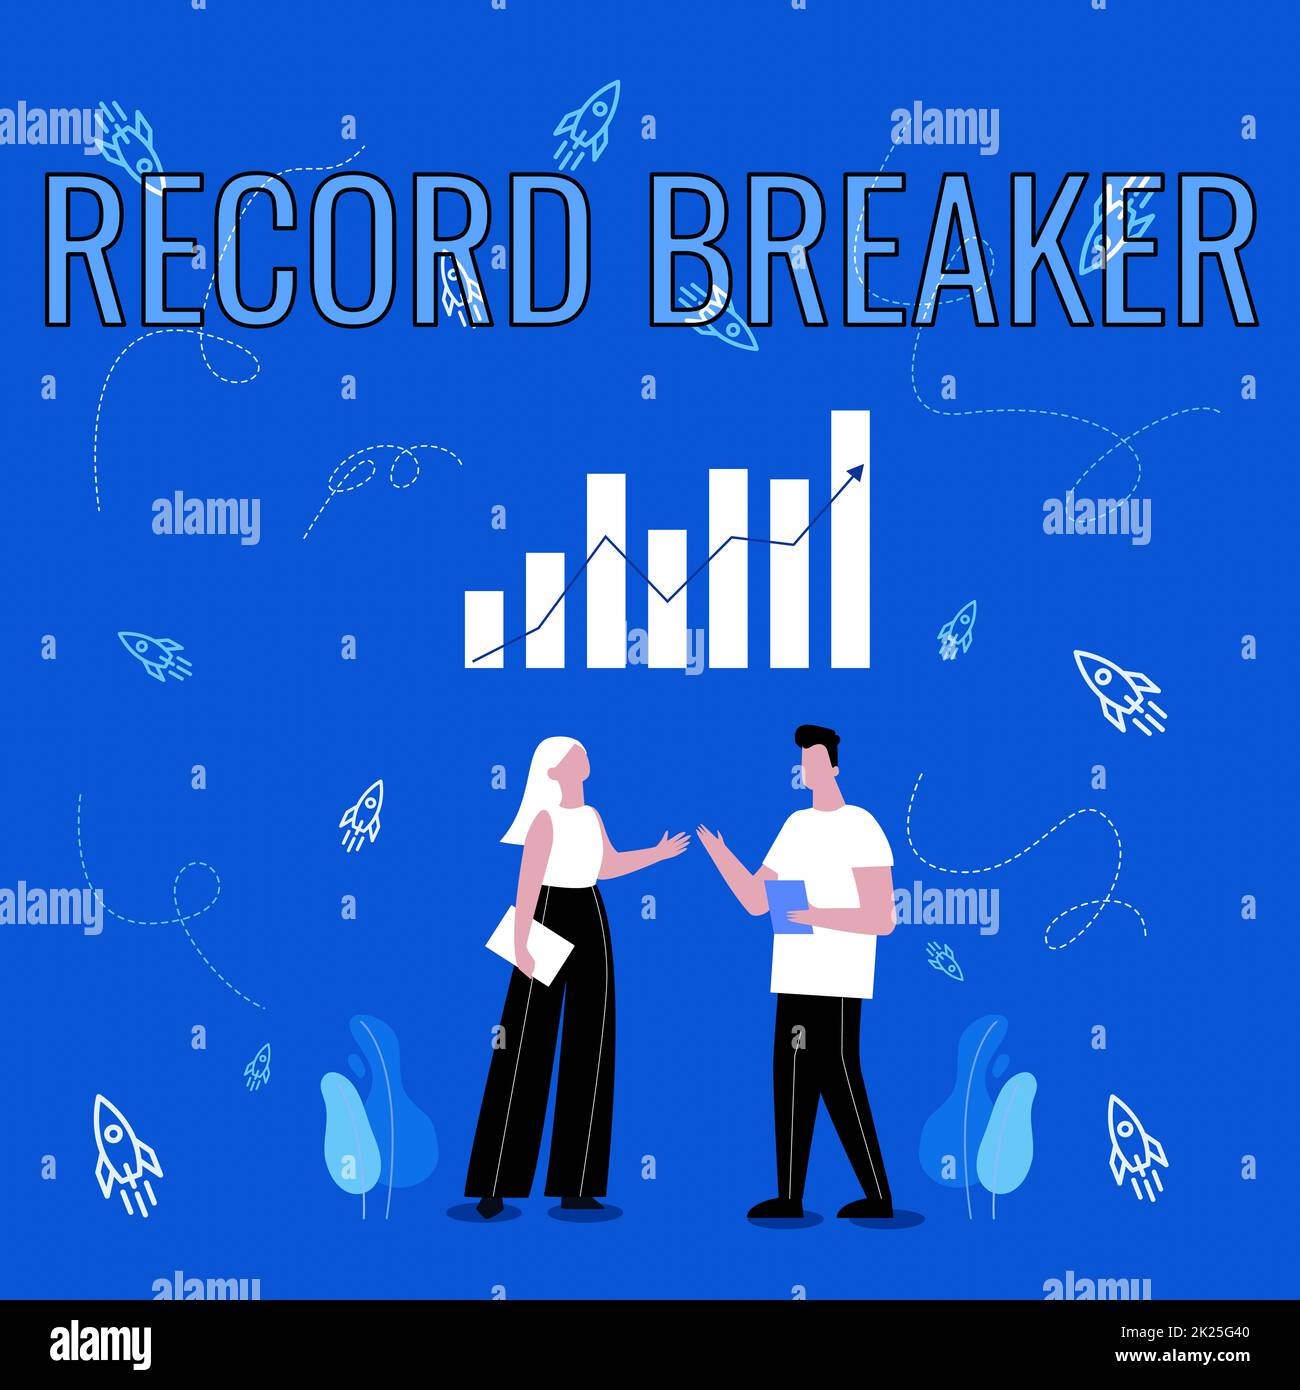 Konzeptionelle Beschriftung Record Breaker. Ein Wort für jemanden oder etwas, das das bisher beste Ergebnis übertrifft Illustration von Partnern, die wunderbare Ideen zur Verbesserung ihrer Fähigkeiten teilen. Stockfoto